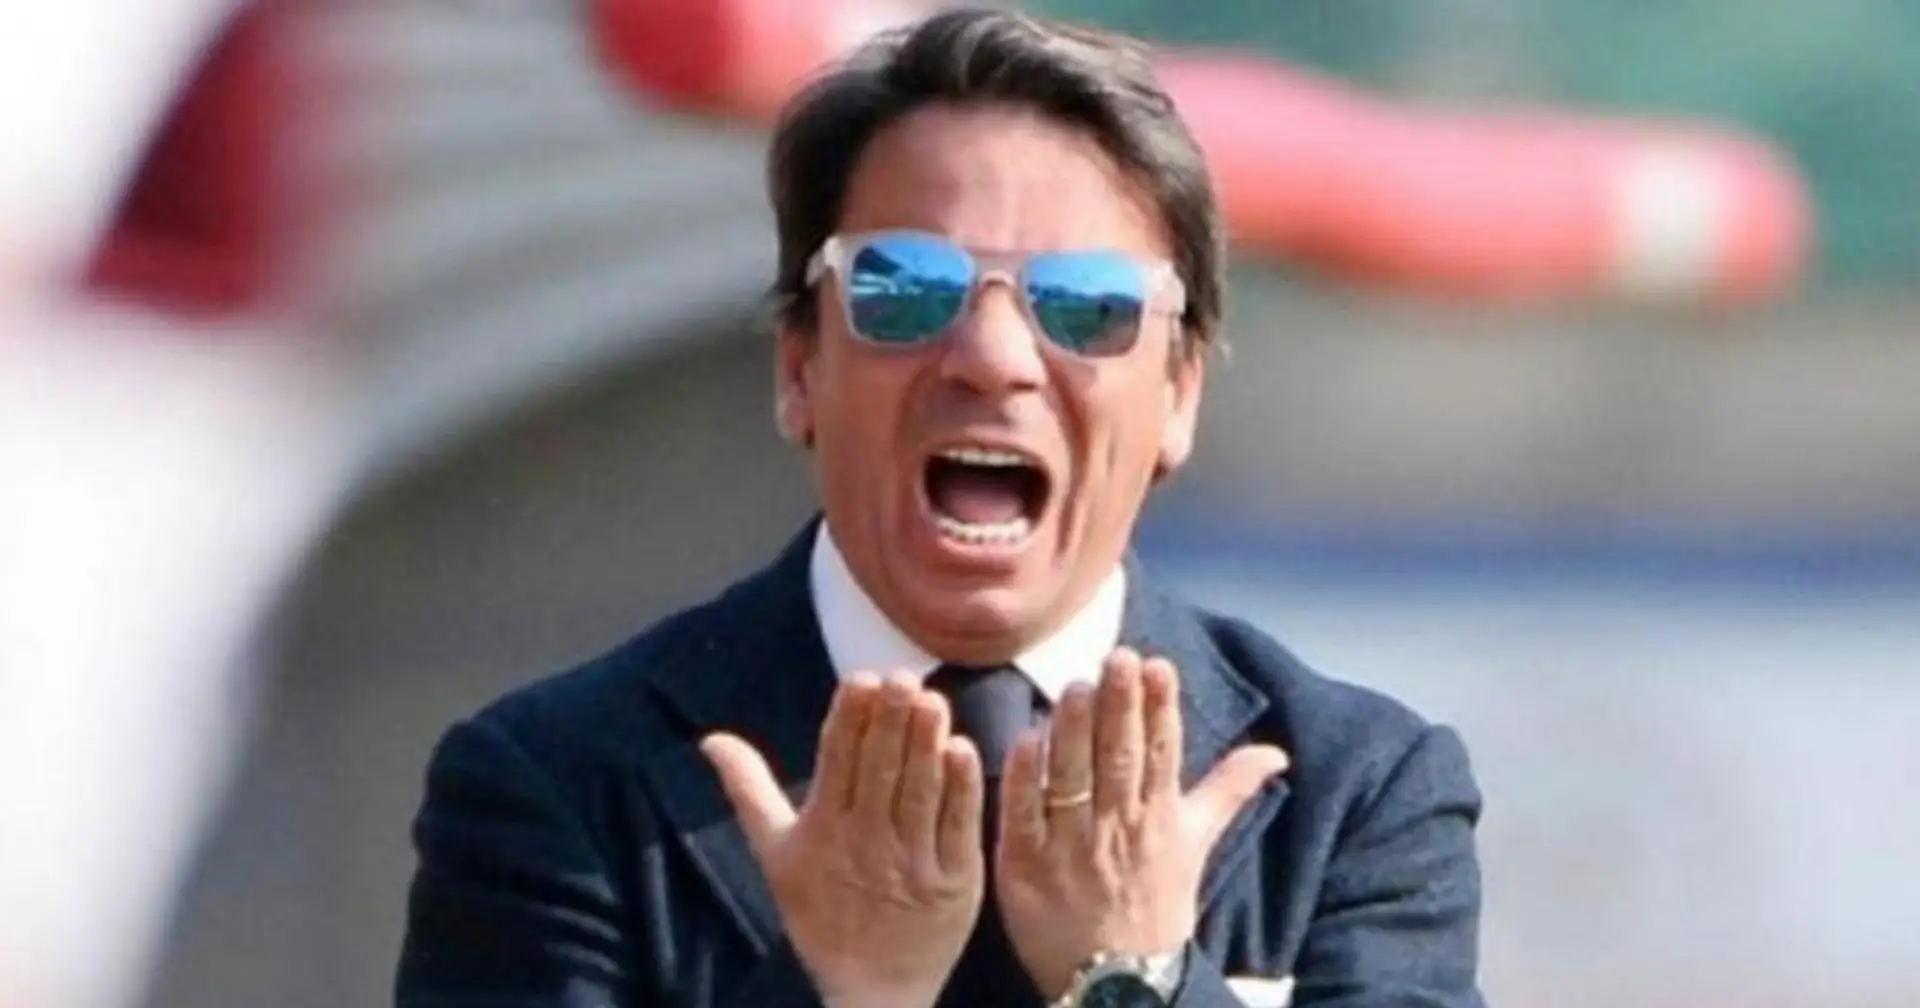 "Dirò 7 preghiere!": un allenatore di Serie C squalificato per aver detto 'almeno 10 bestemmie'